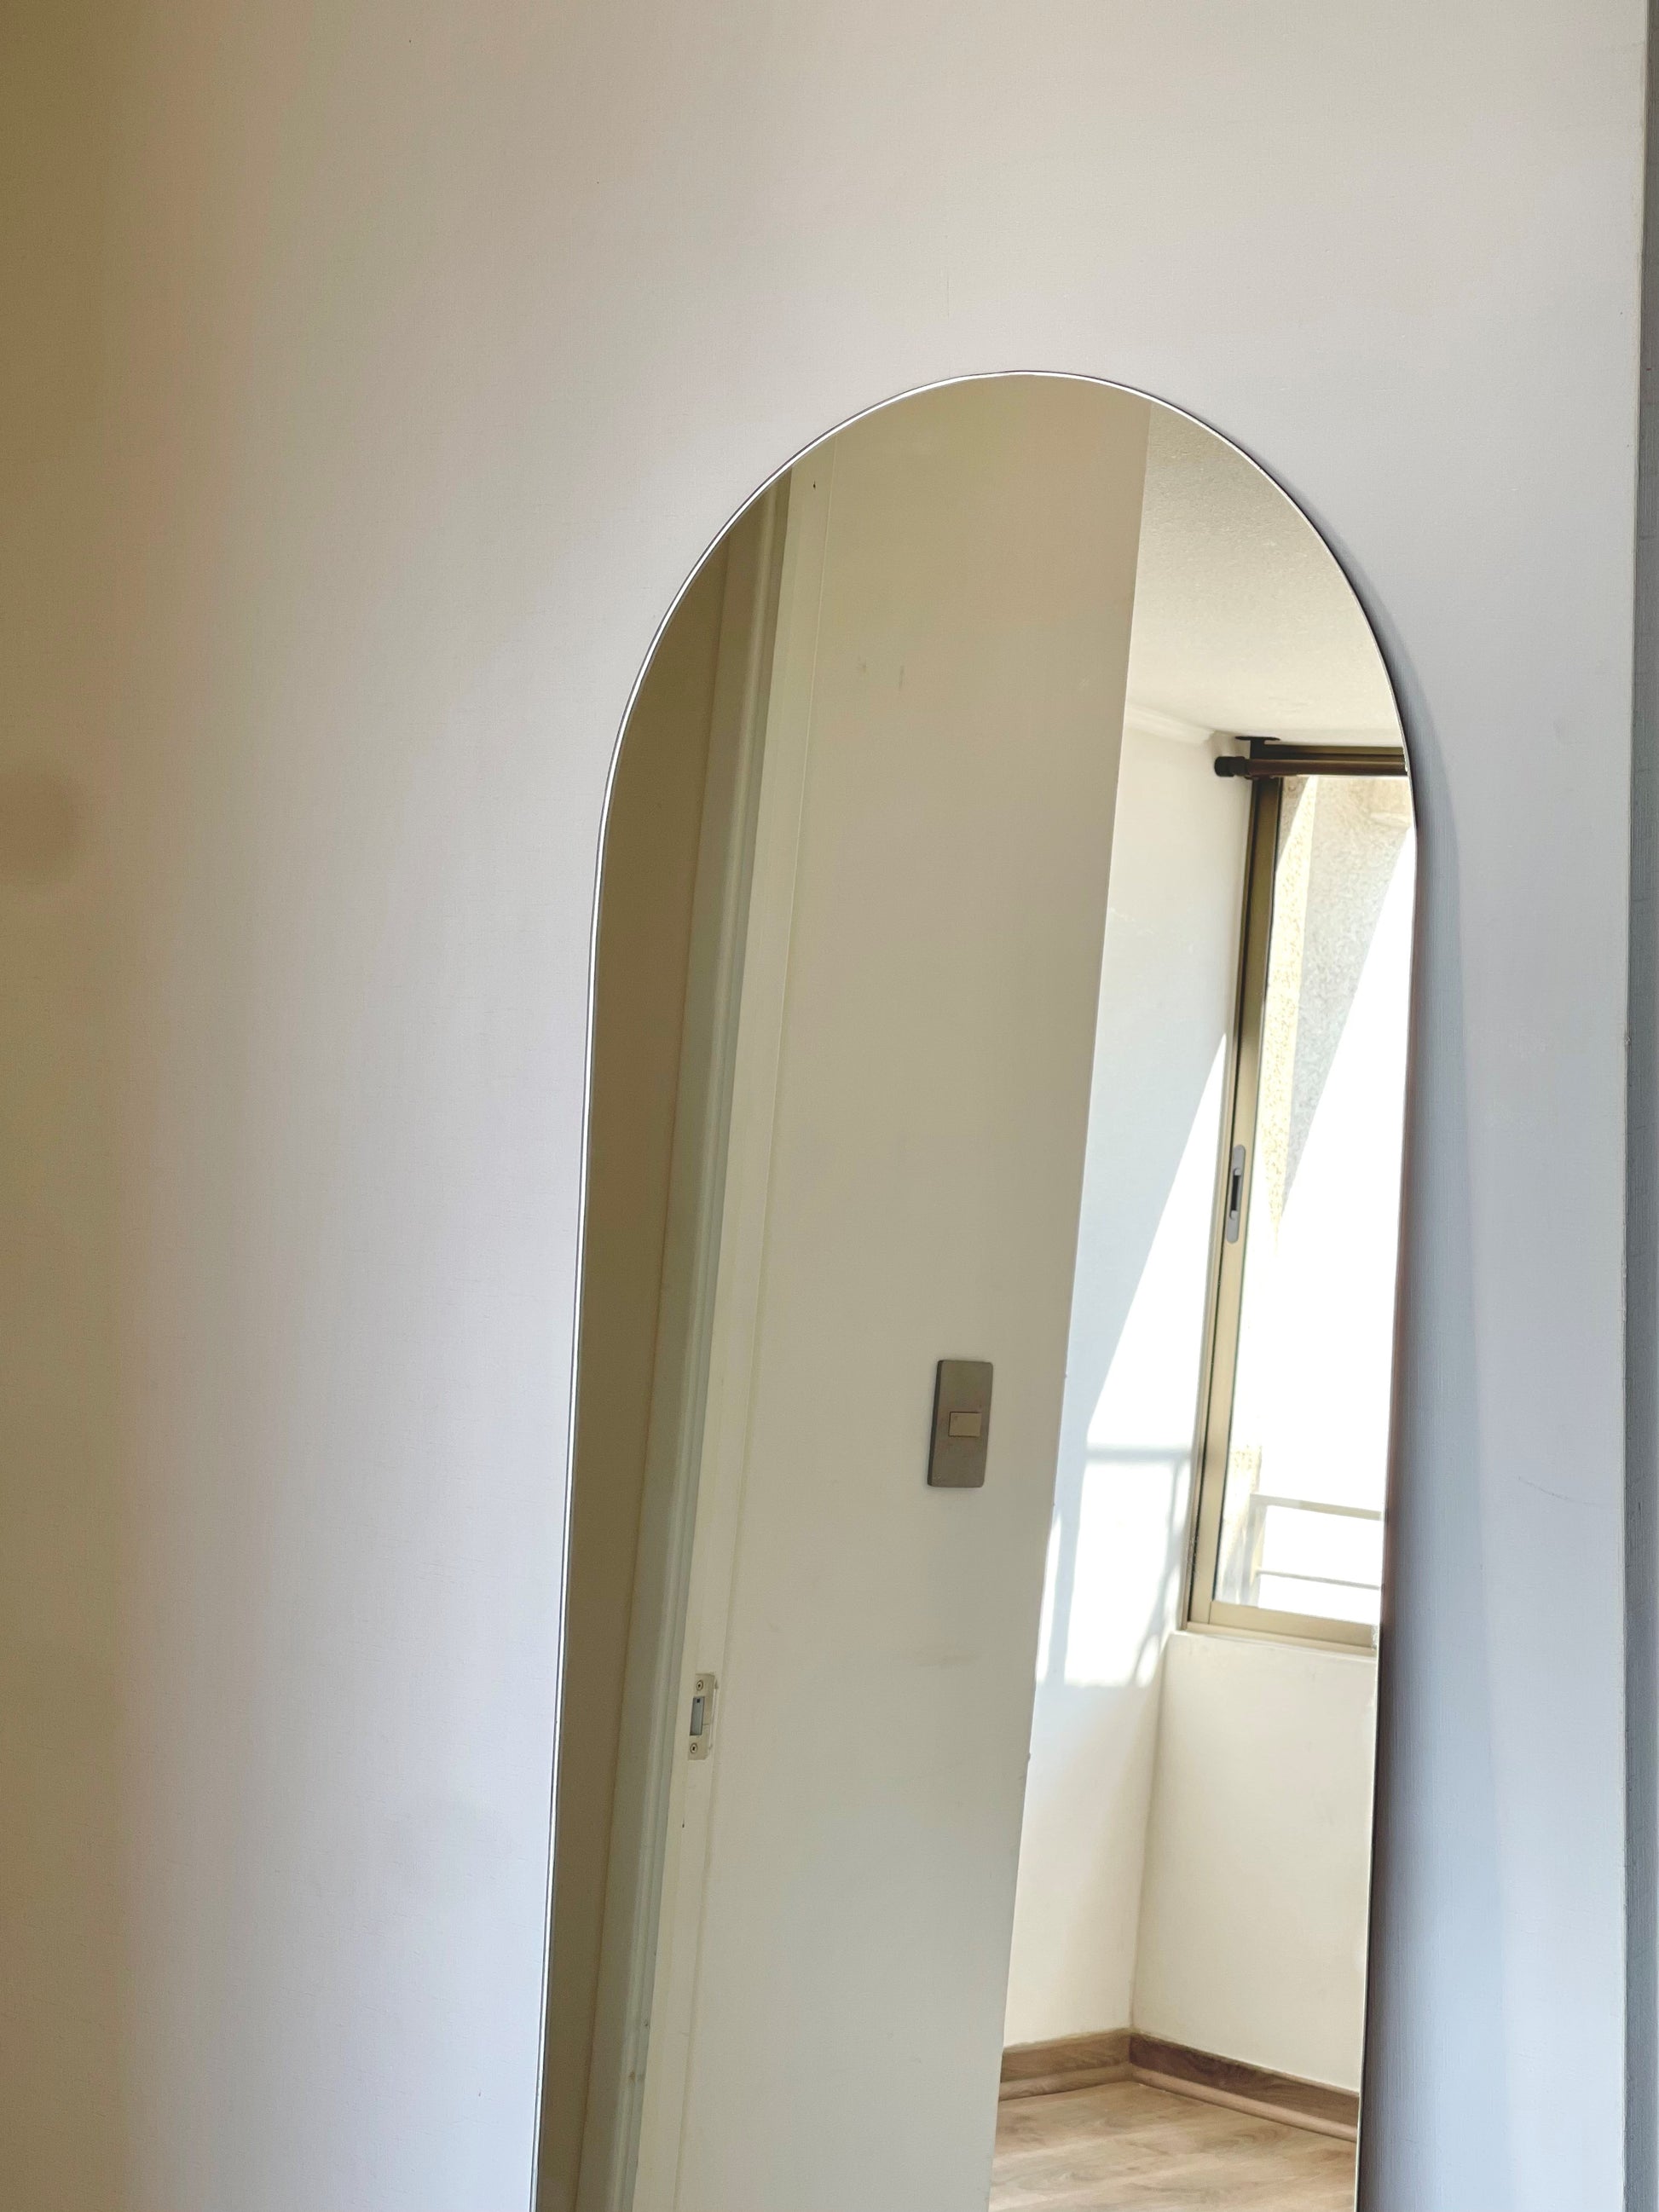 Amplía la luminosidad y estilo en tu hogar con nuestro espejo de pie en forma de arco. Su diseño elegante y funcionalidad lo convierten en el complemento perfecto para cualquier espacio